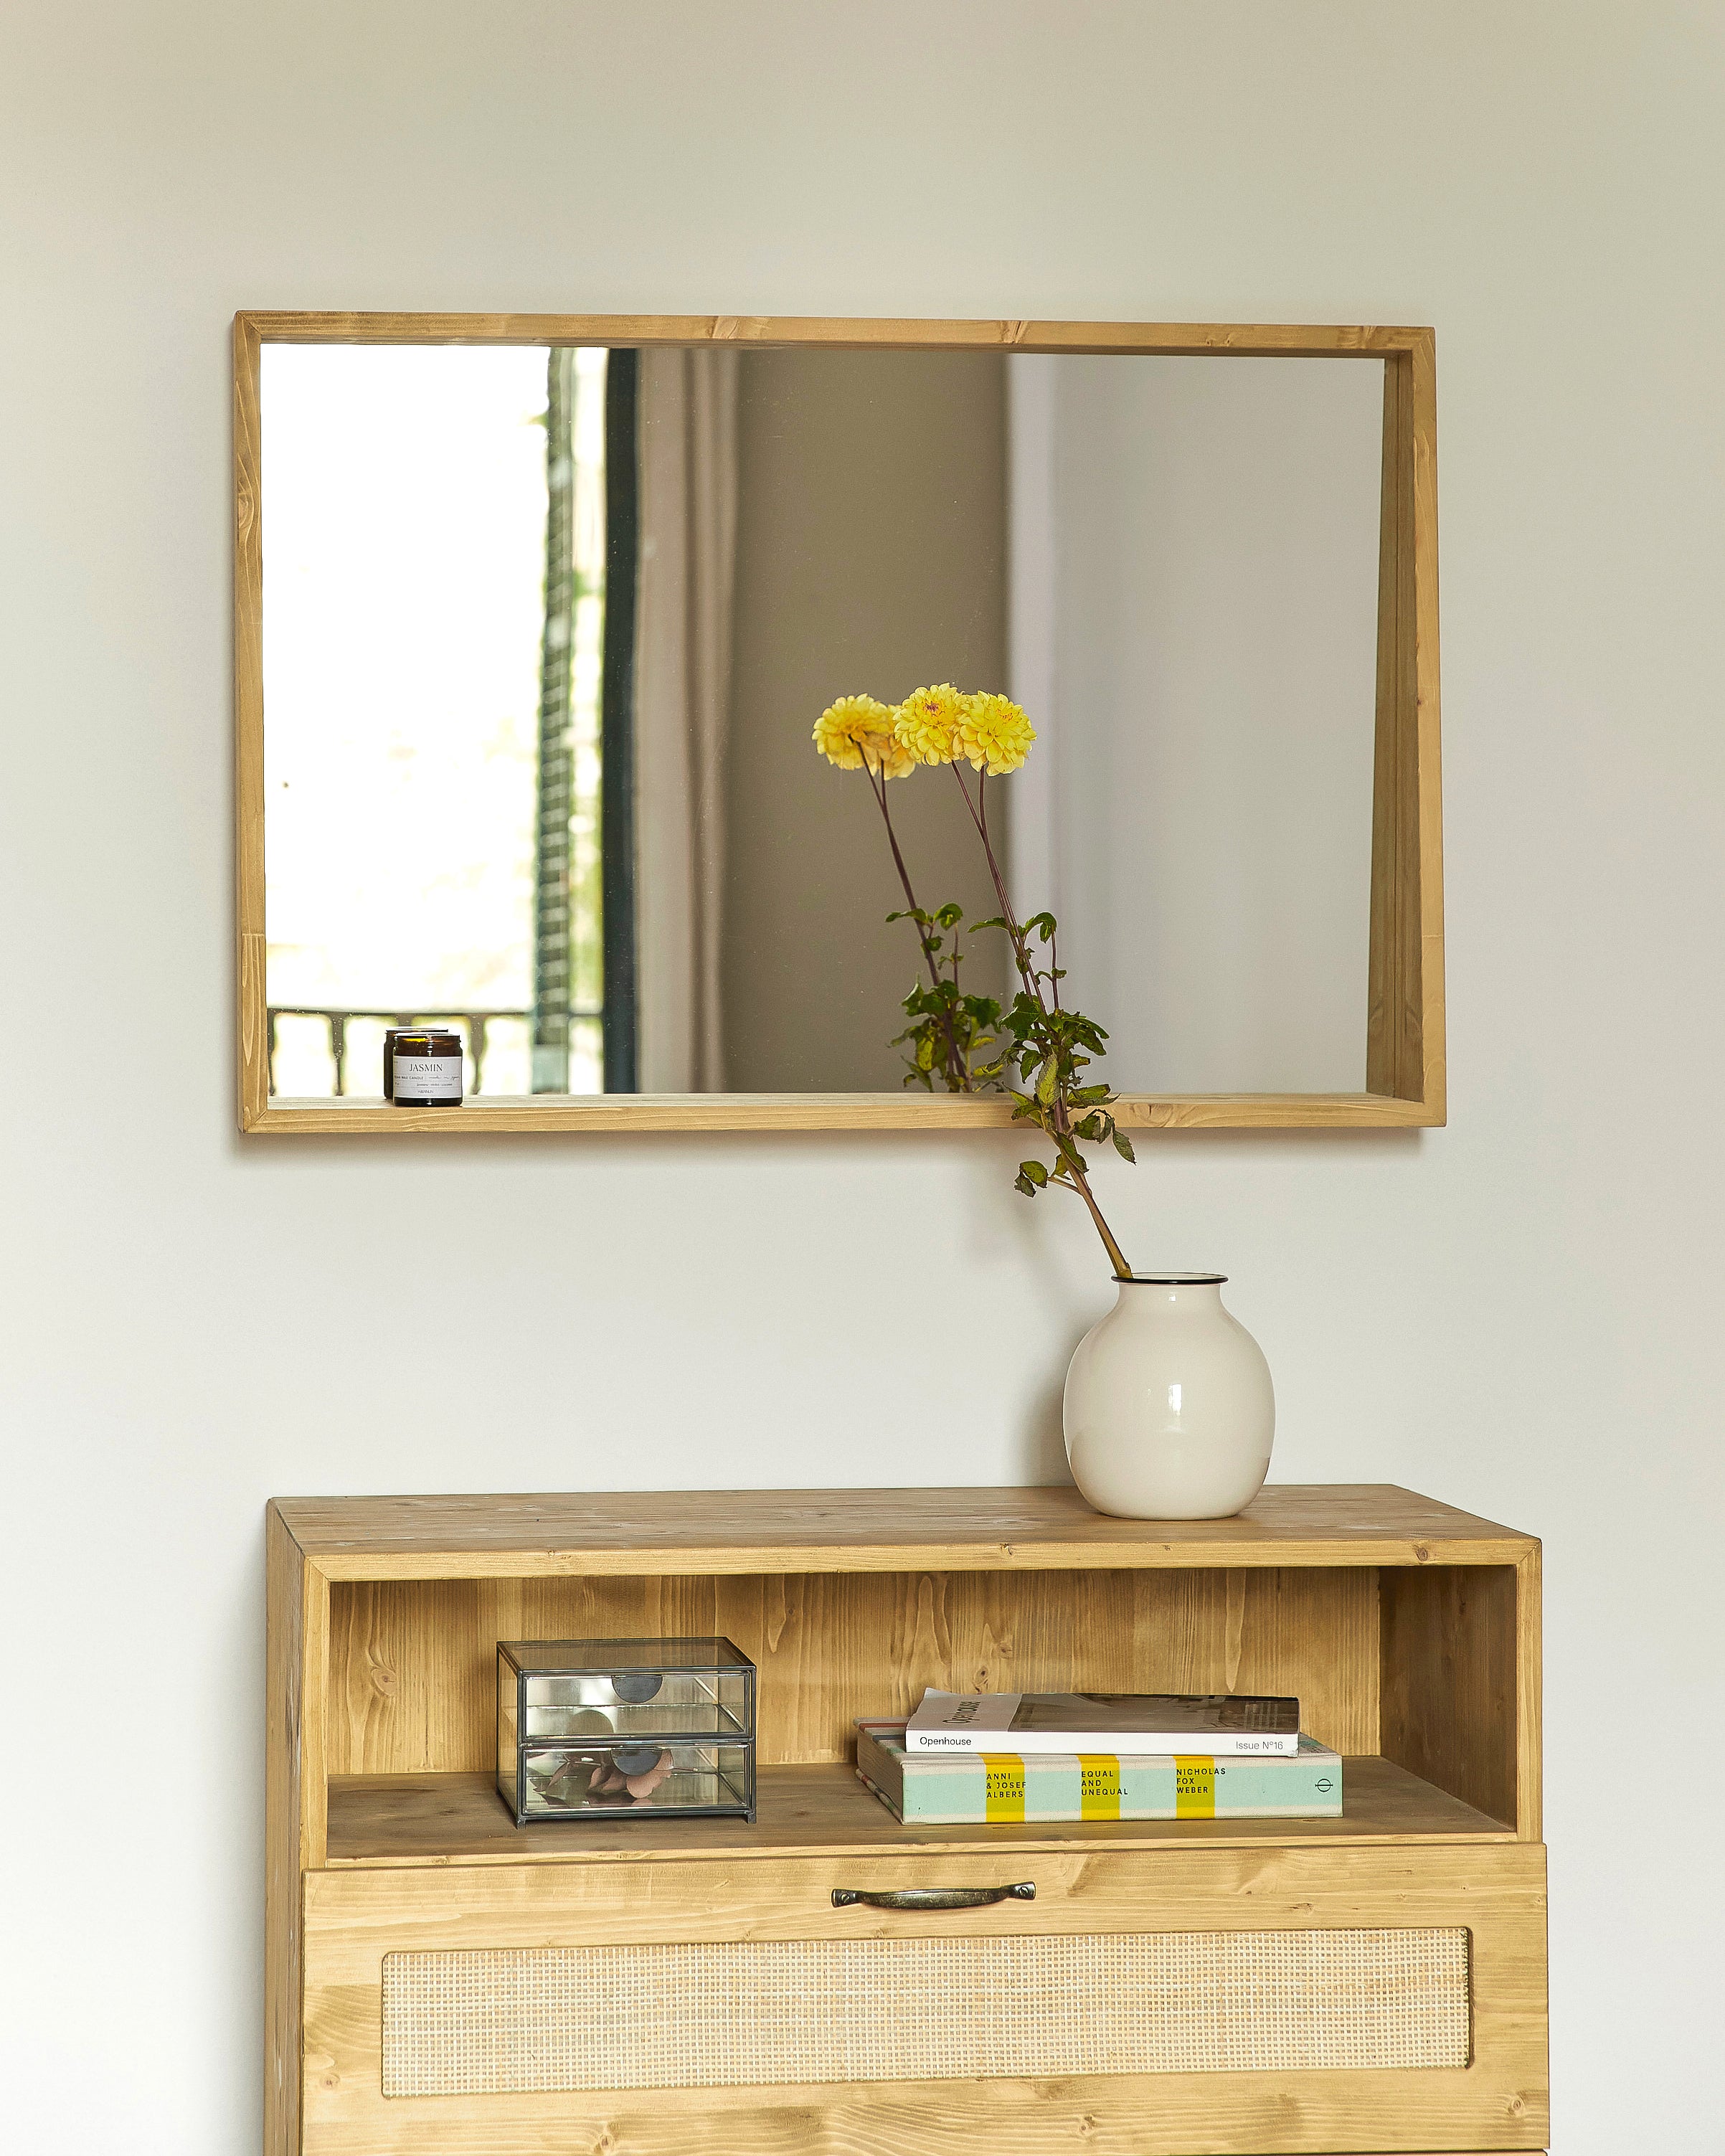 Espejo de pared de madera maciza con balda en tono roble 88x68cm Natay